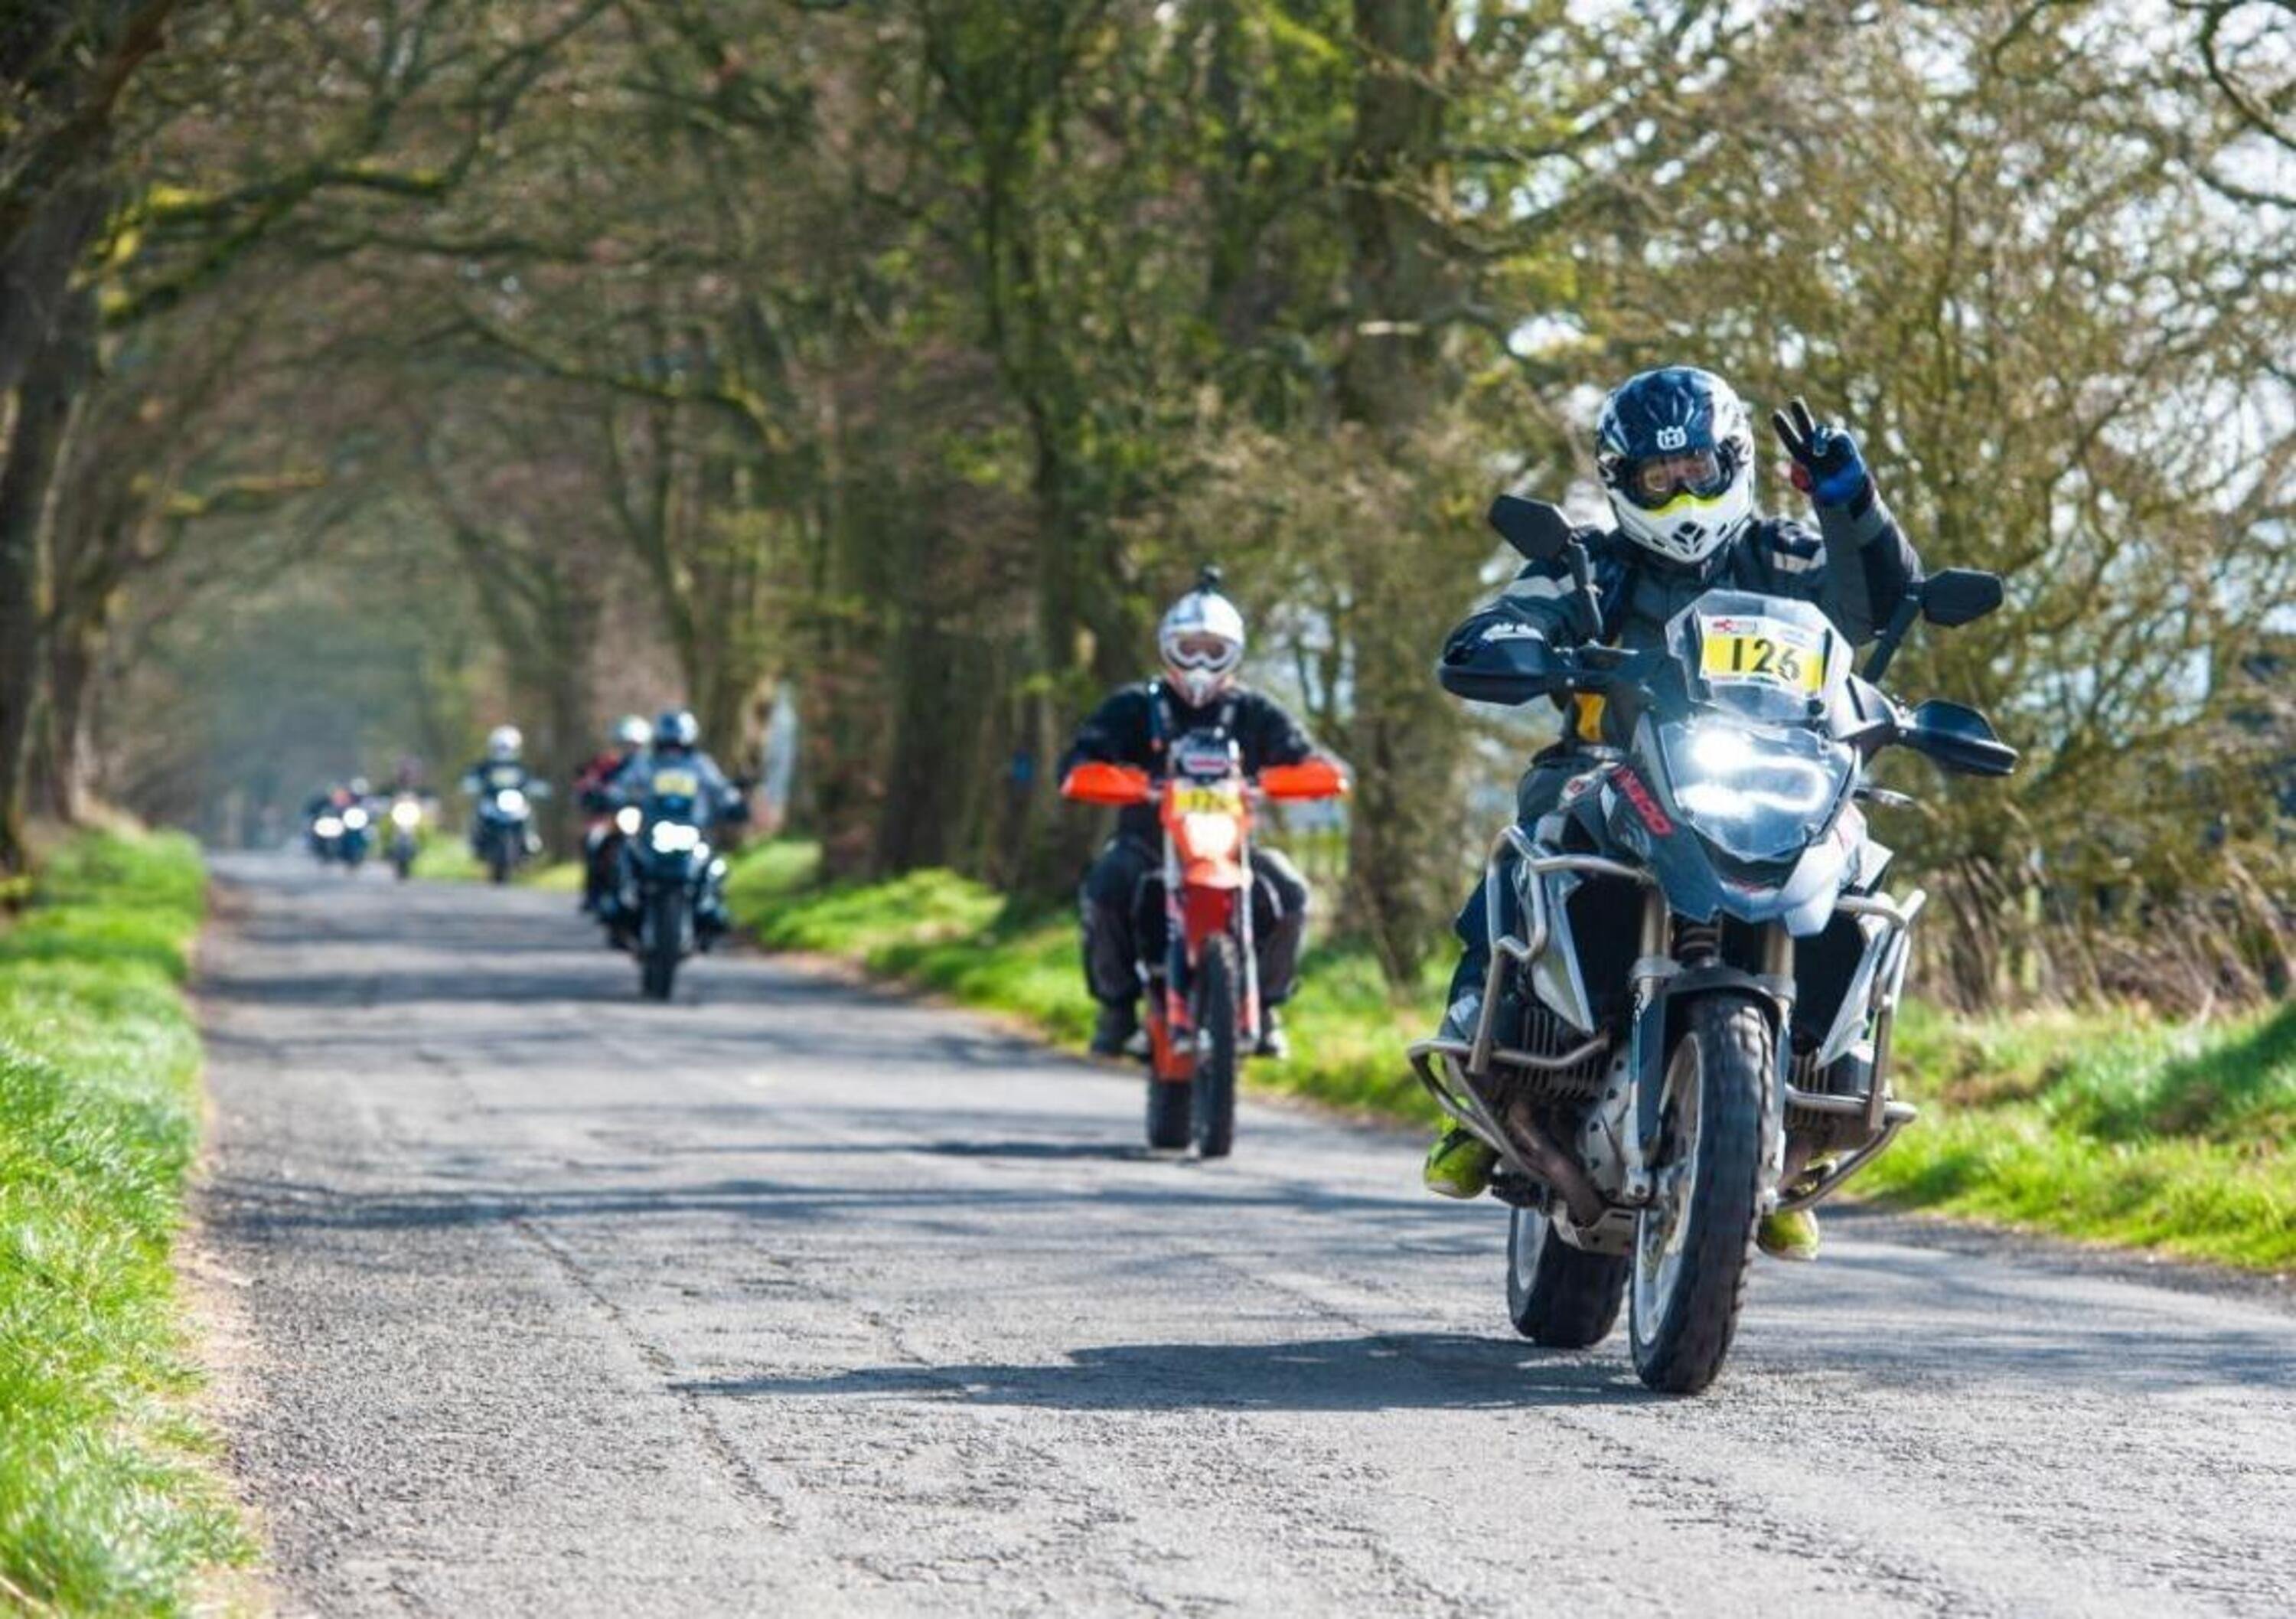 Vendite moto UK in aprile: a picco ma meglio che altrove